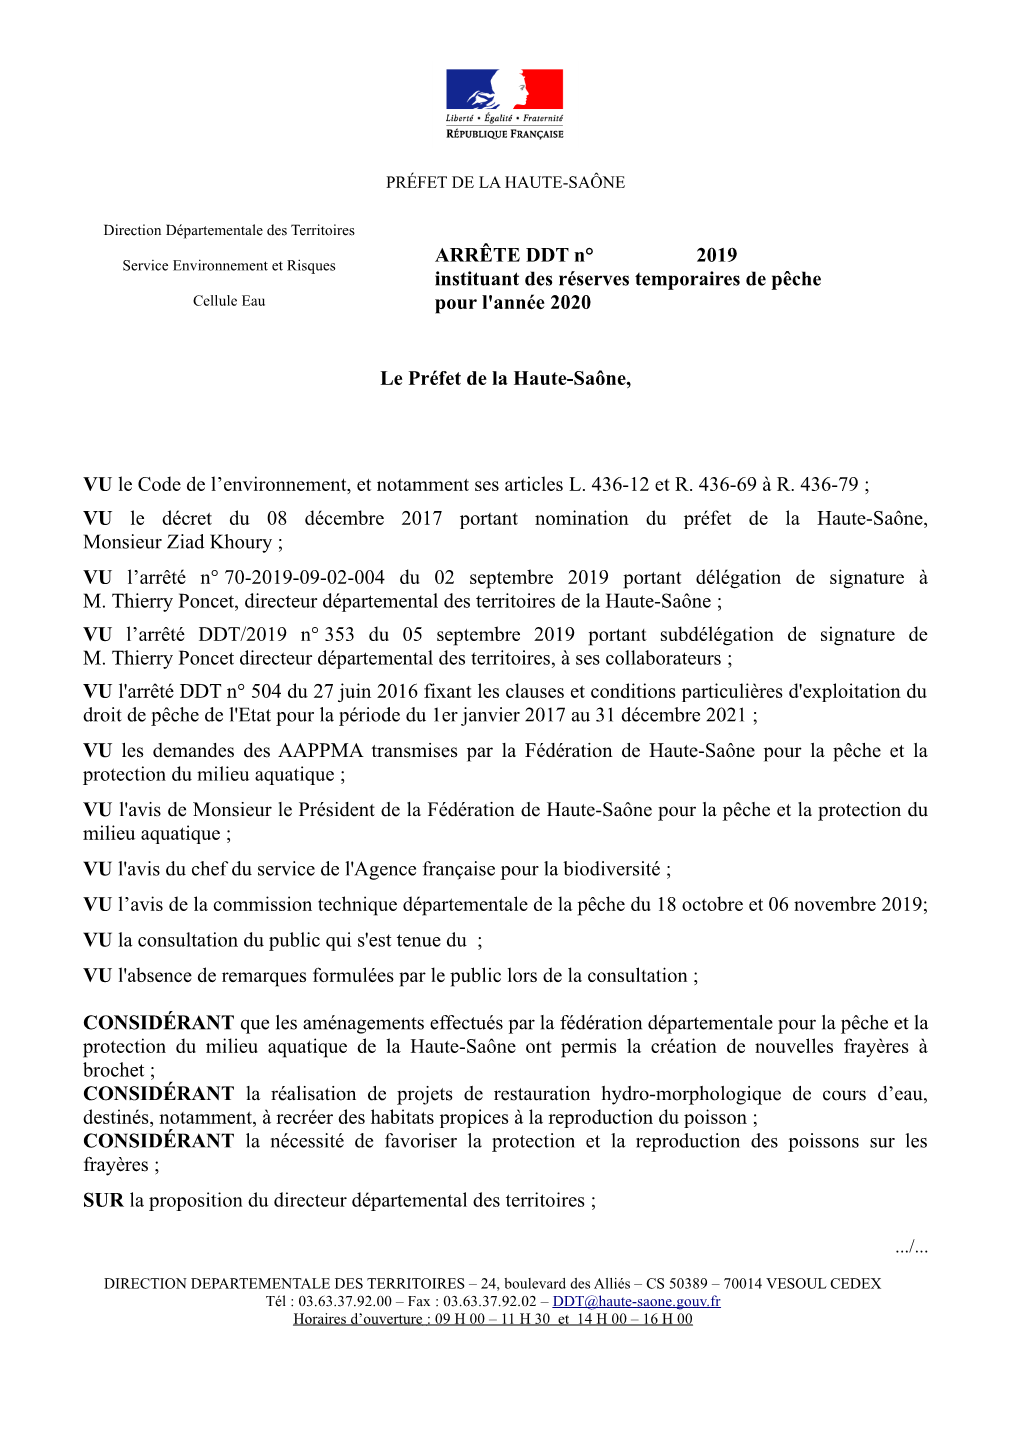 ARRÊTE DDT N° 2019 Instituant Des Réserves Temporaires De Pêche Cellule Eau Pour L'année 2020